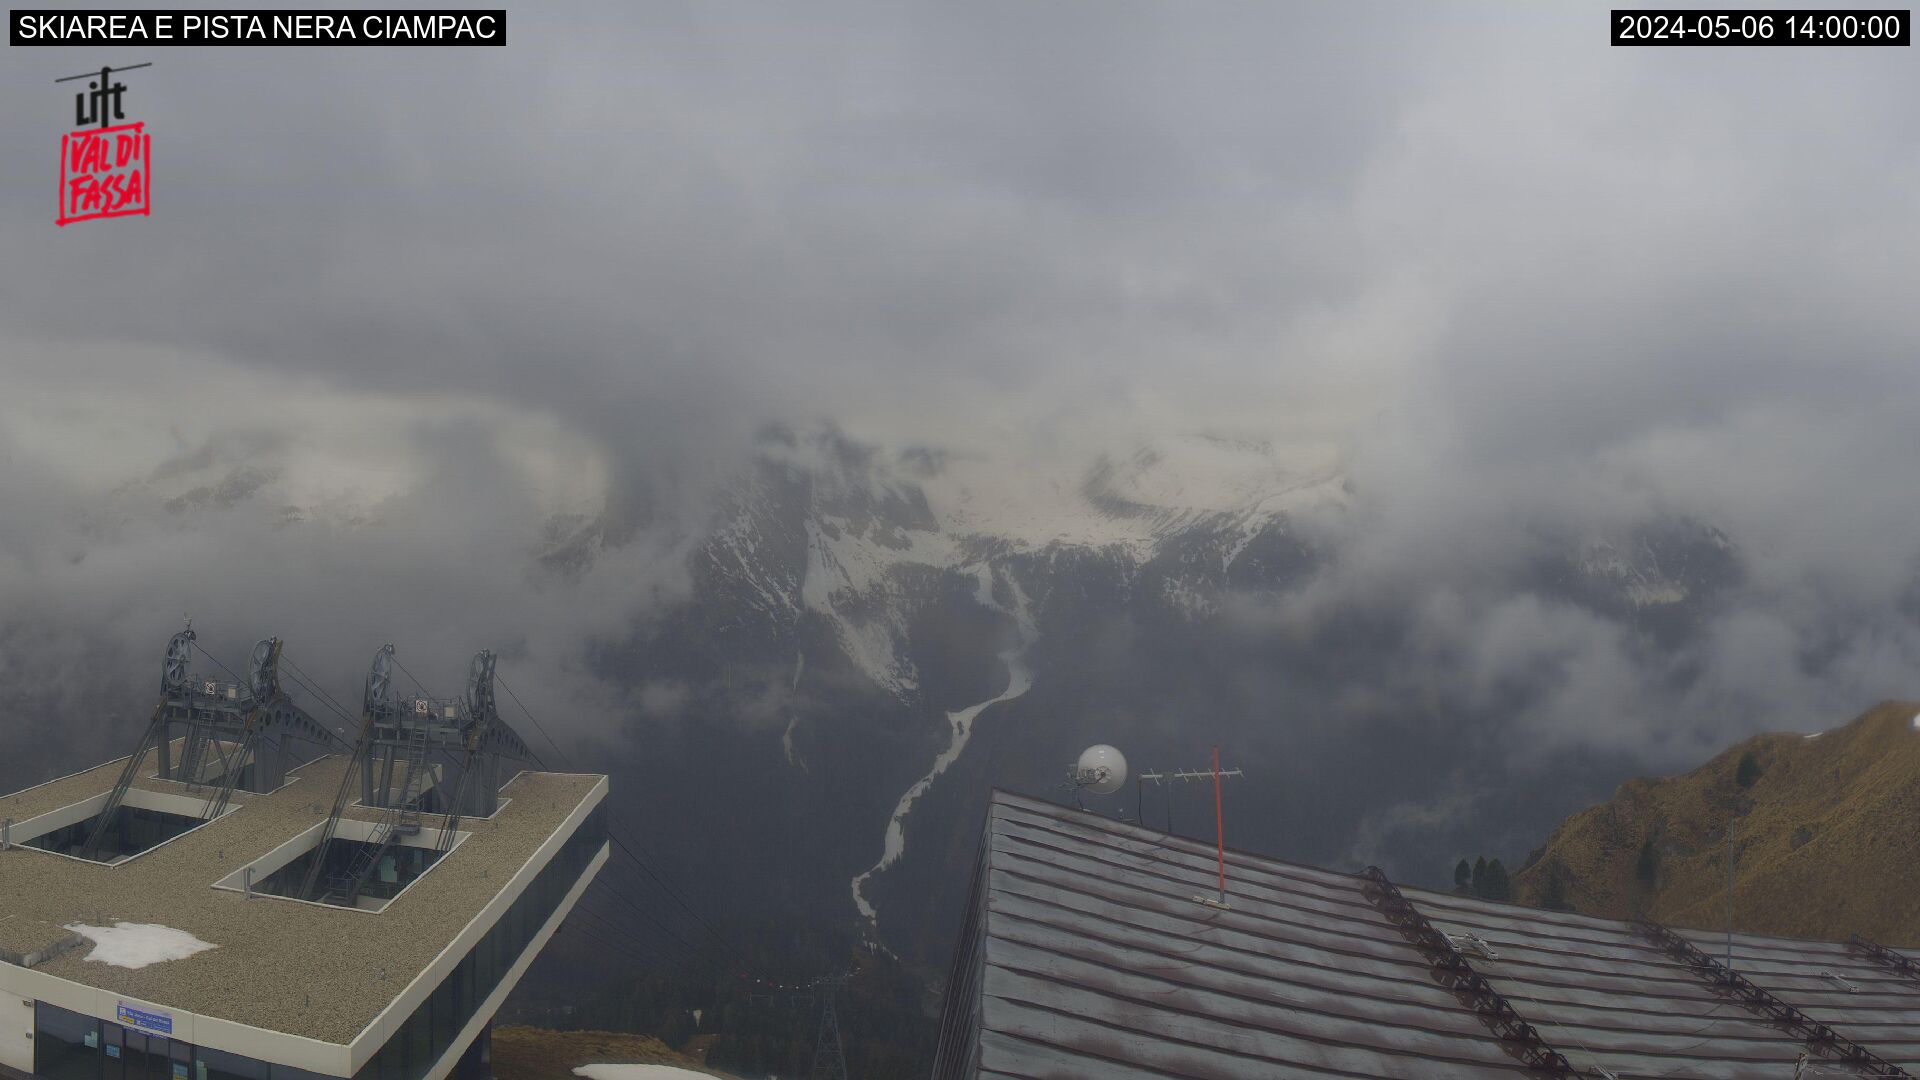 Webcam panorama verso ski area ciampac da funivia Alba Col dei Rossi